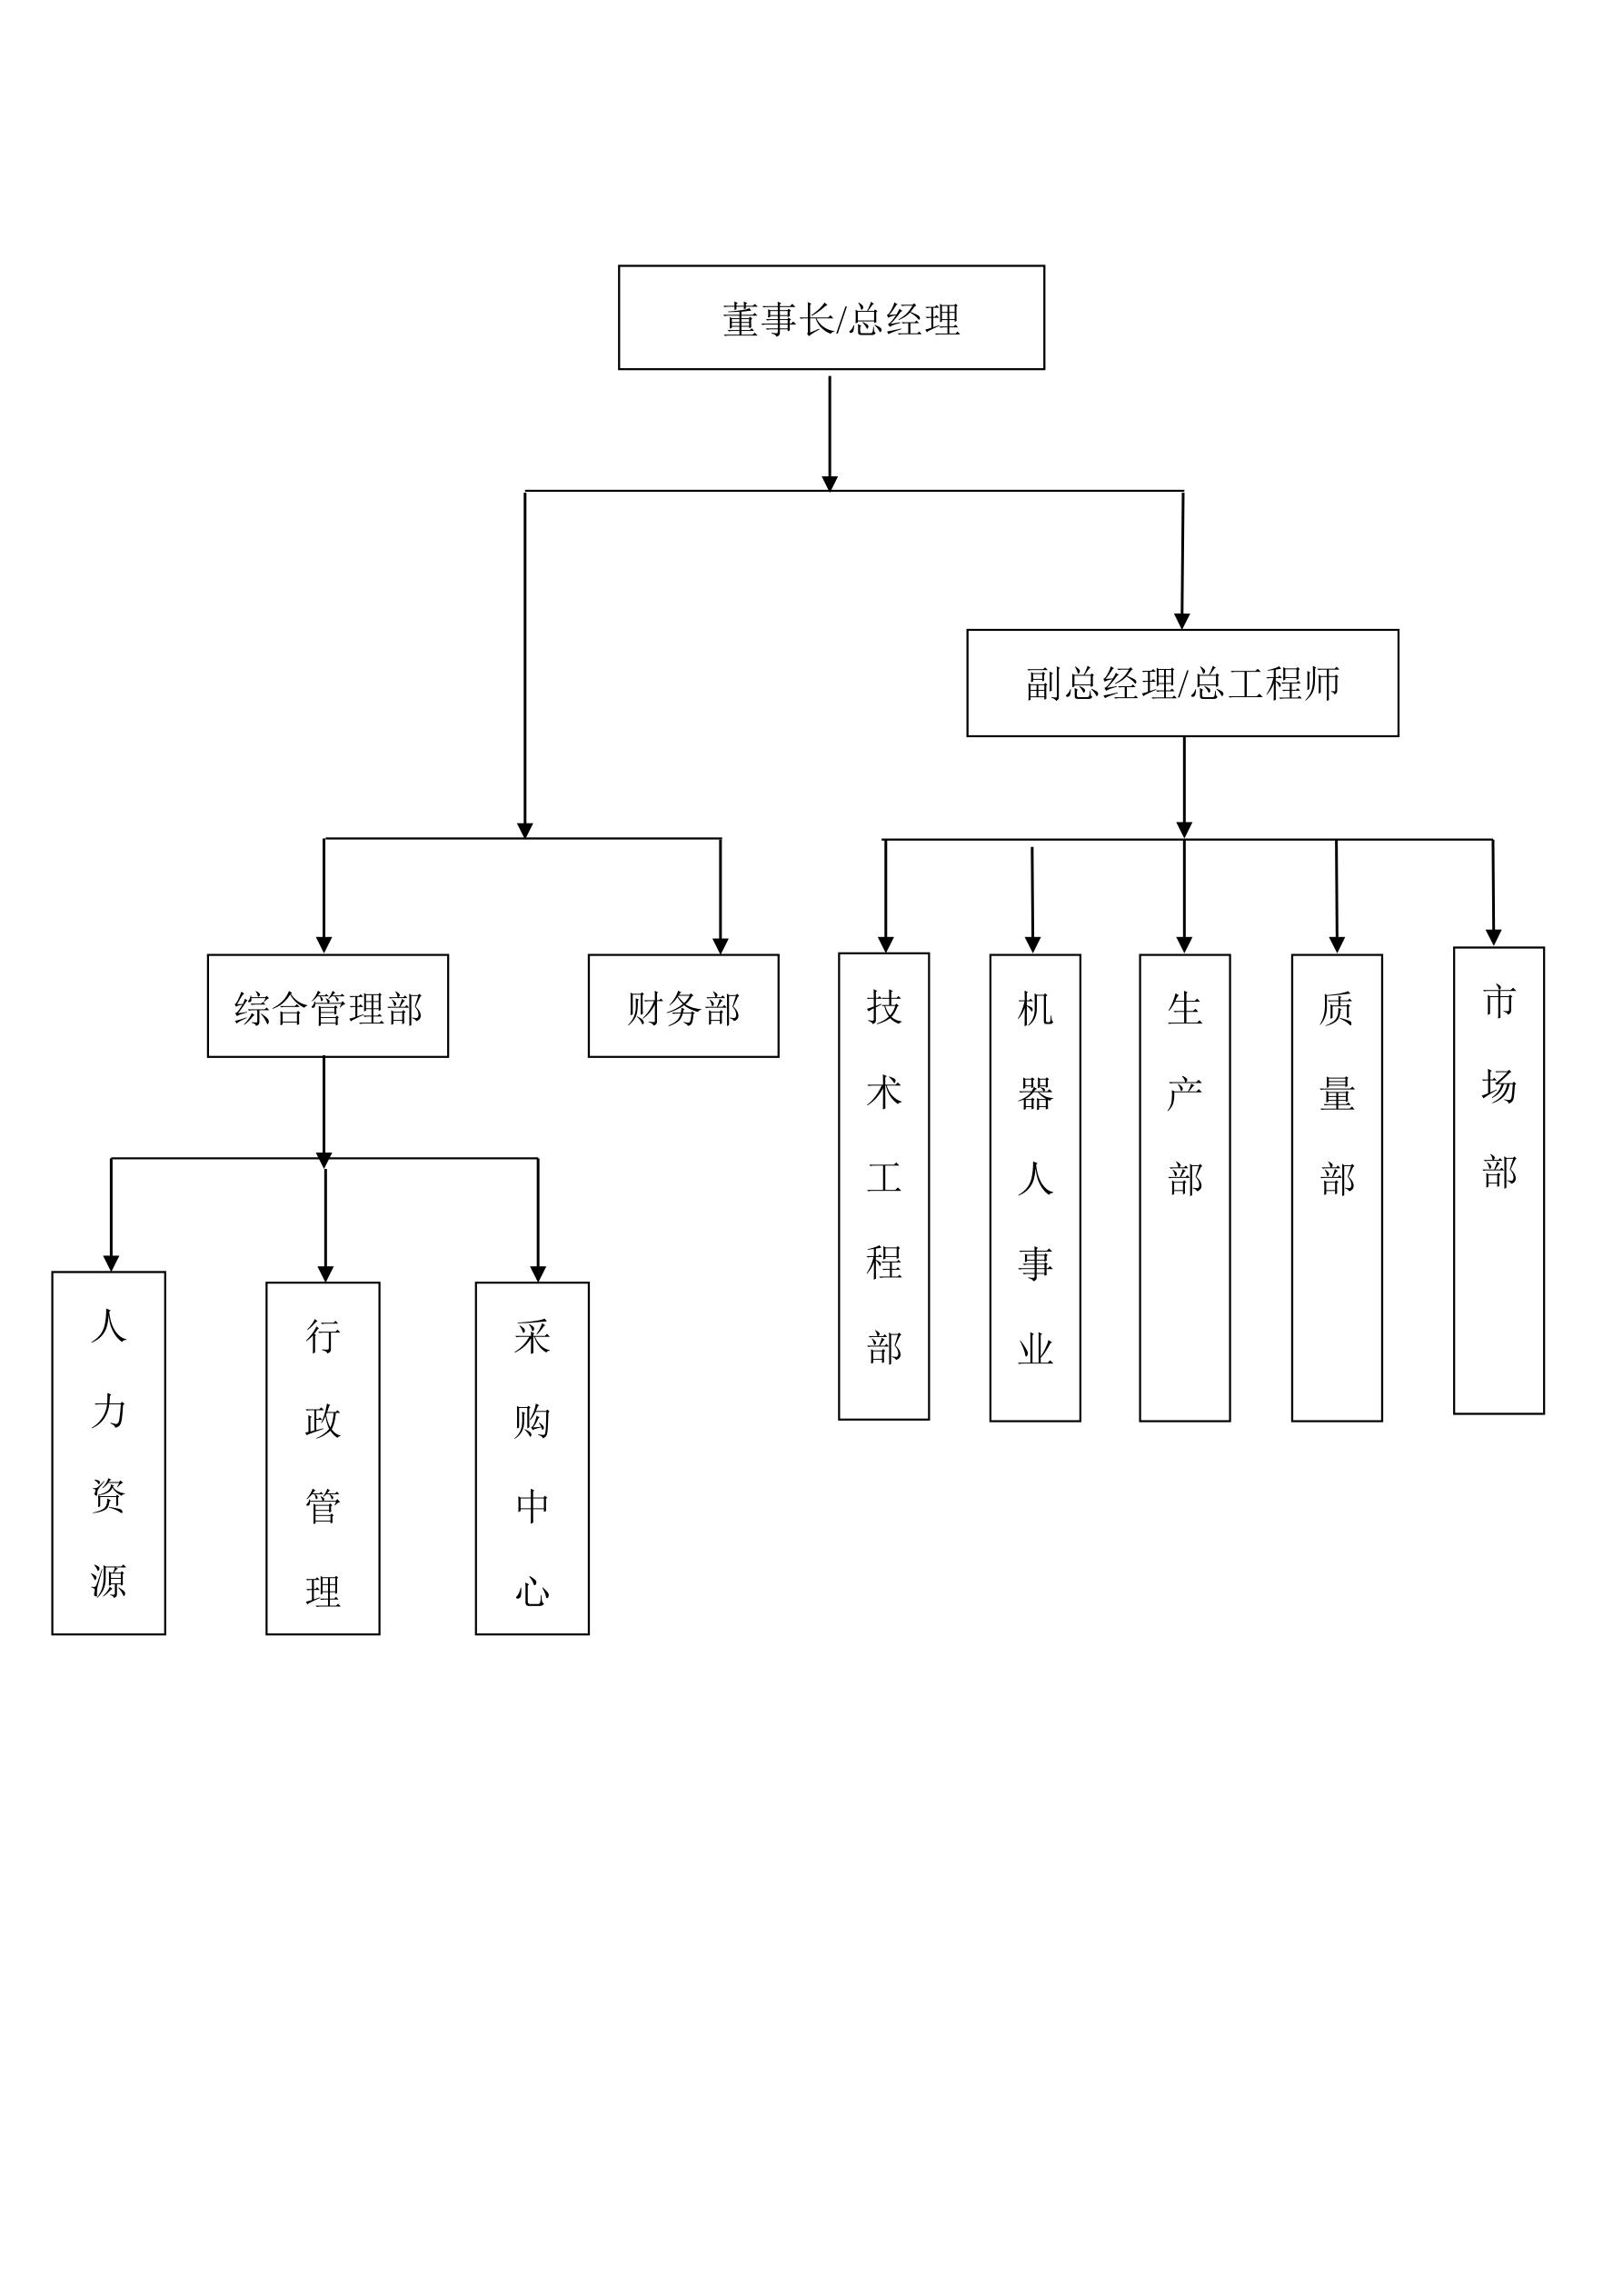 公司组织机构图_1.jpg